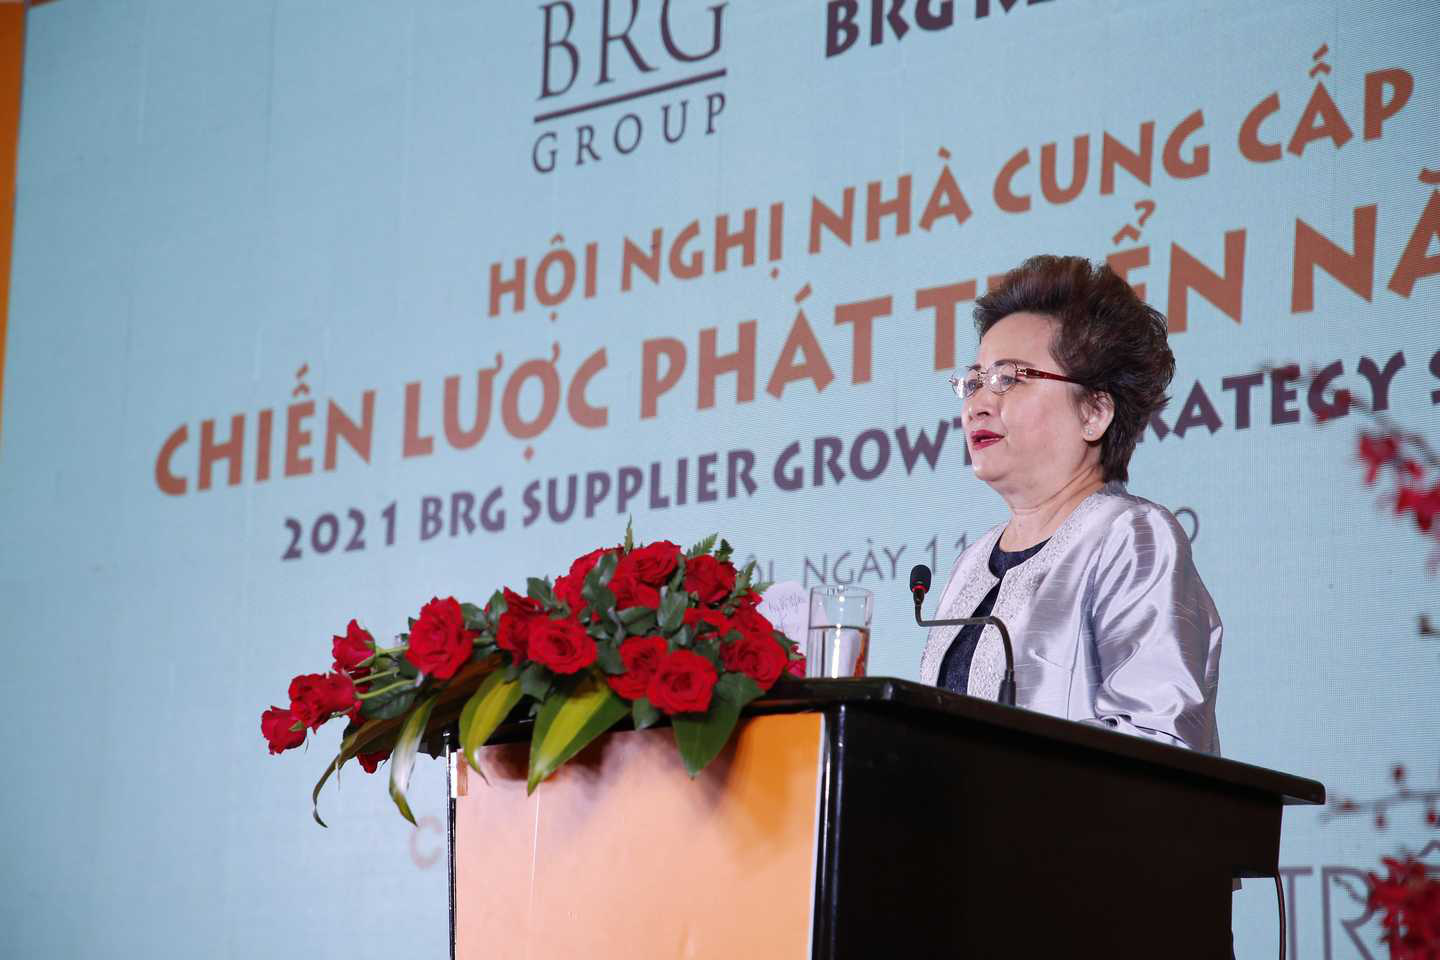 Hội nghị nhà cung cấp BRG Retail năm 2020 chia sẻ cơ hội – đồng hành phát triển - Ảnh 1.